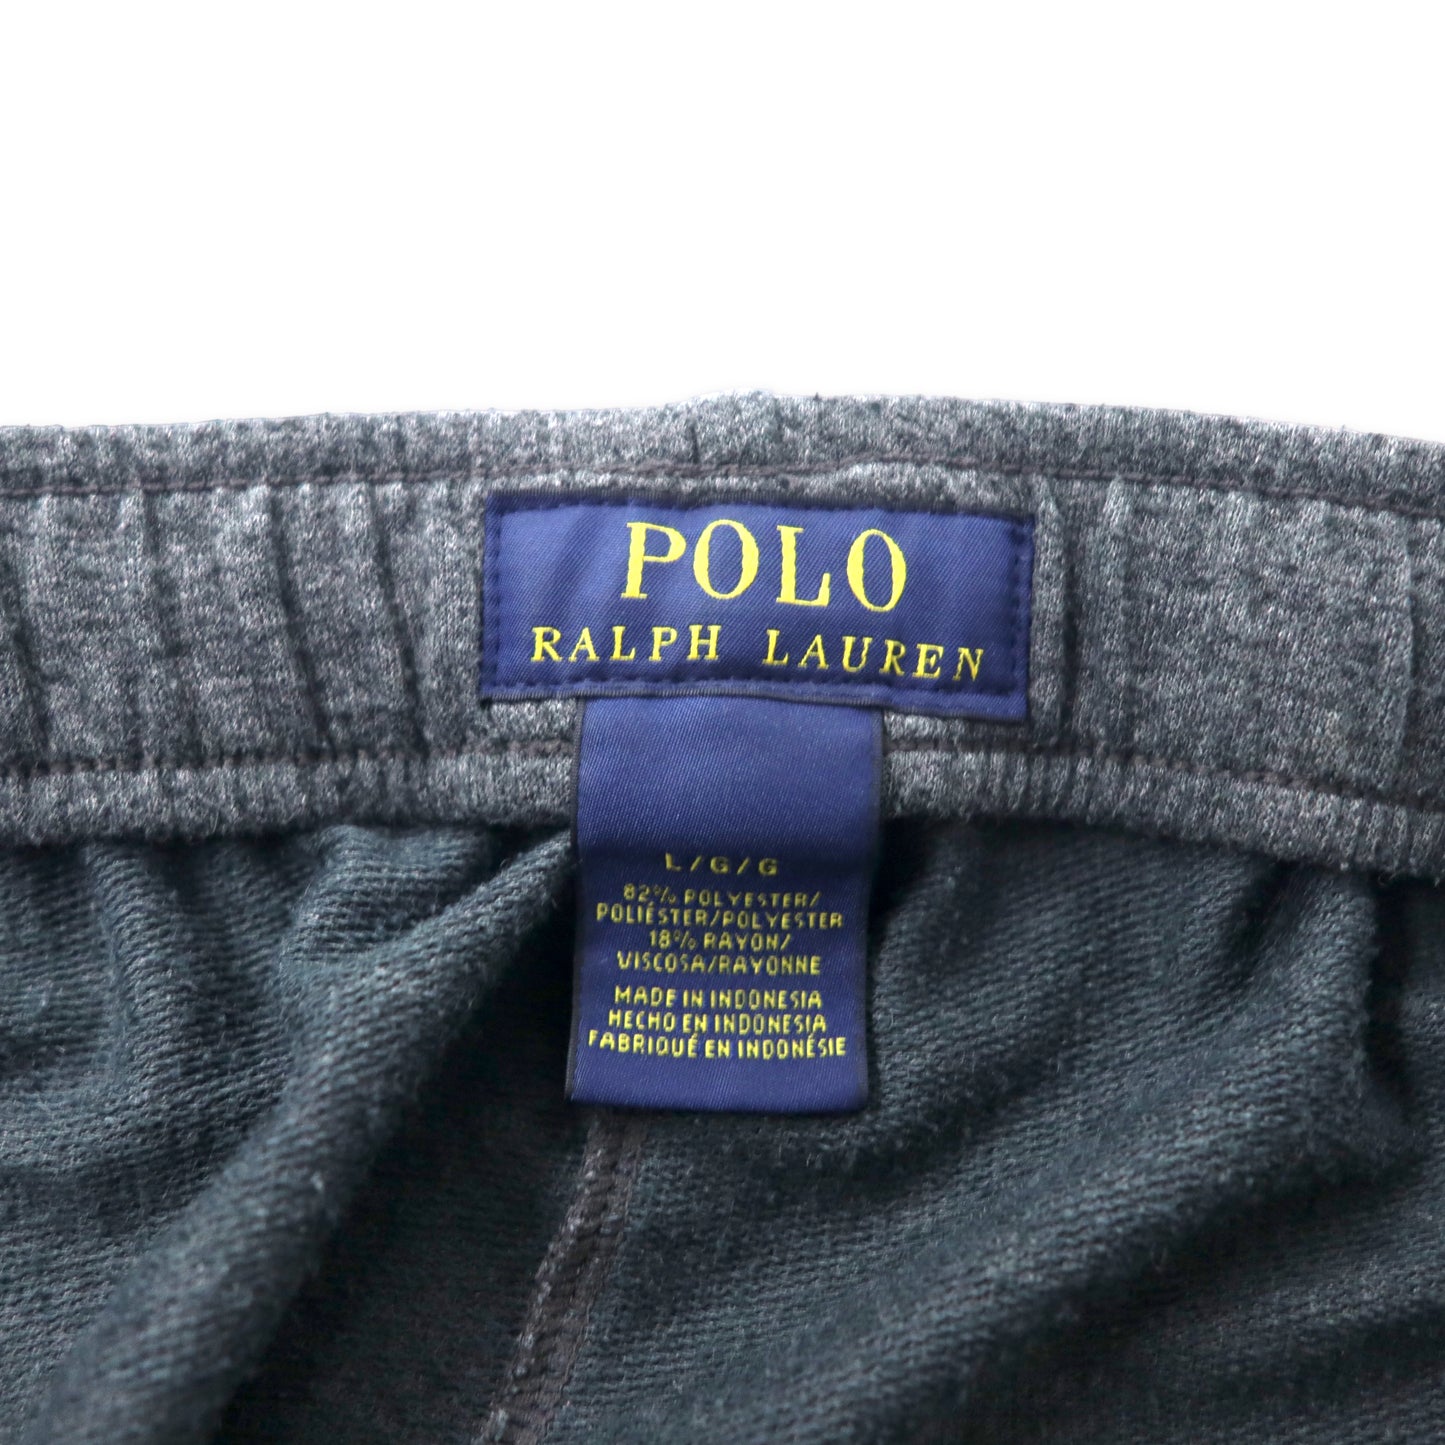 POLO RALPH LAUREN スウェットパンツ L グレー ポリエステル スモールポニー刺繍